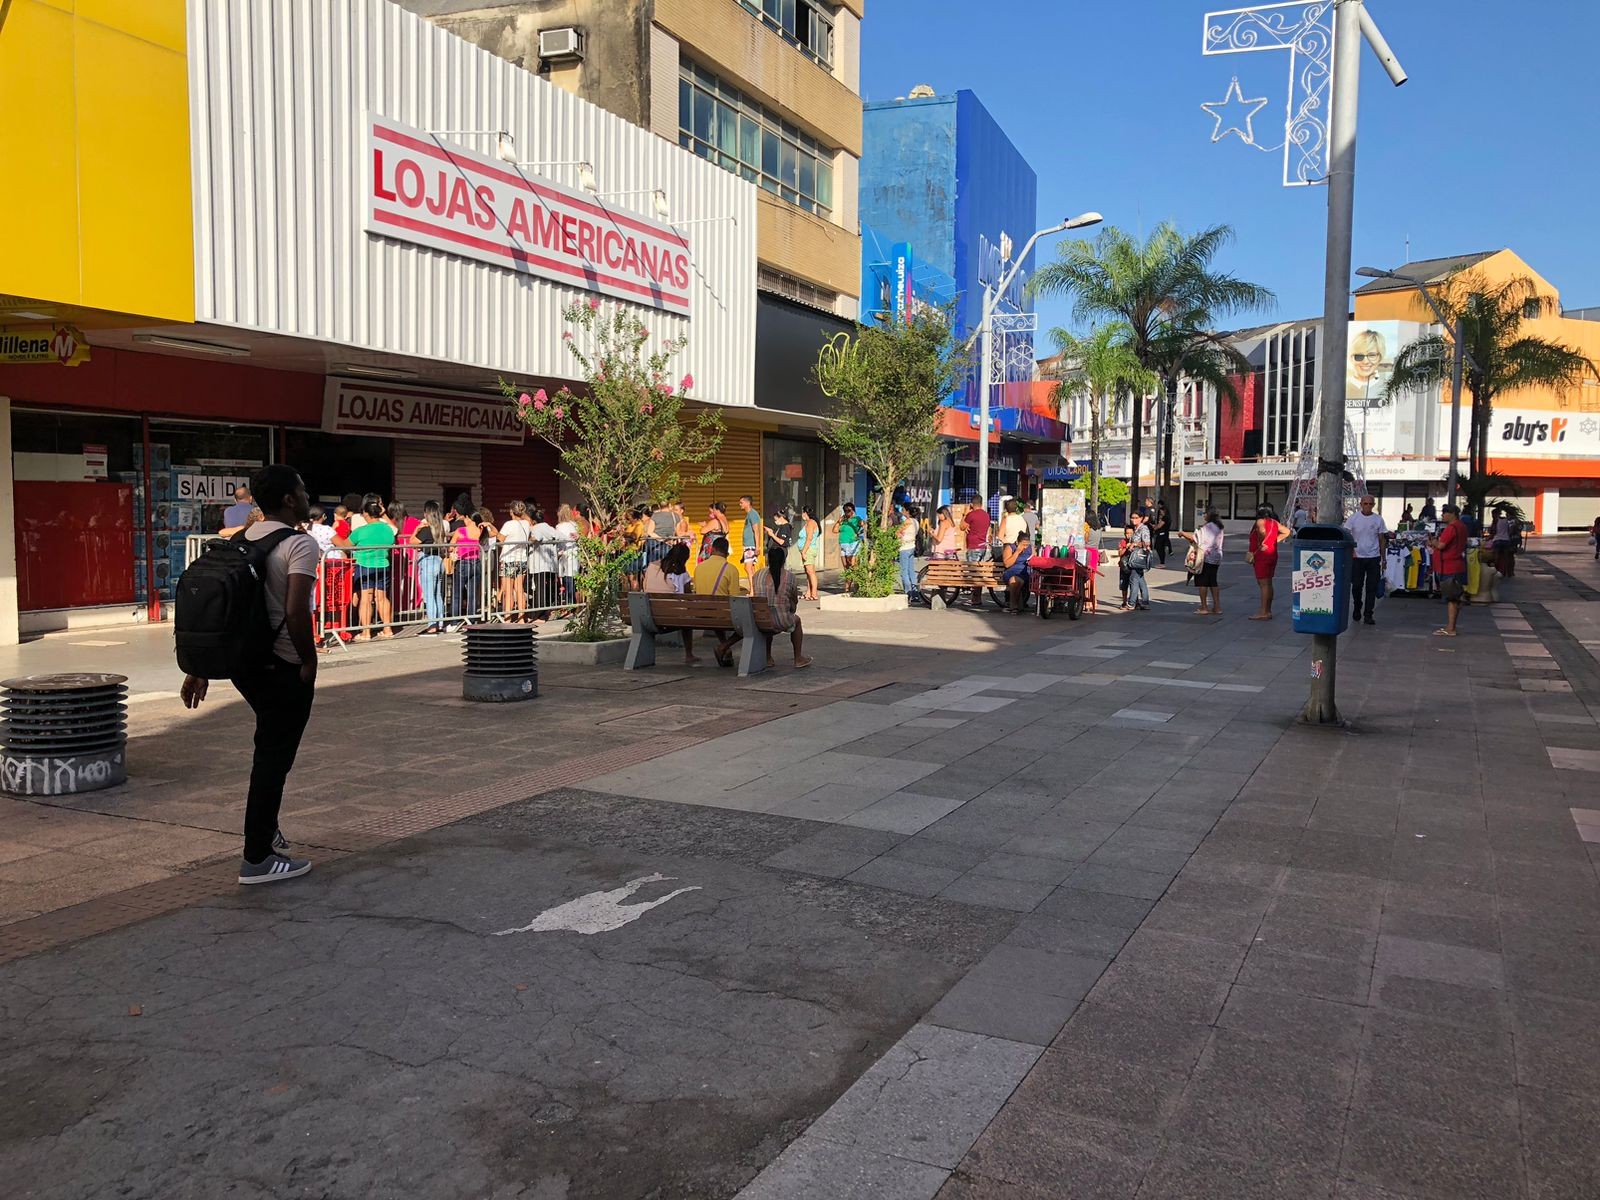 Consumidores madrugam em filas de lojas em busca de descontos da Black Friday em Maceió